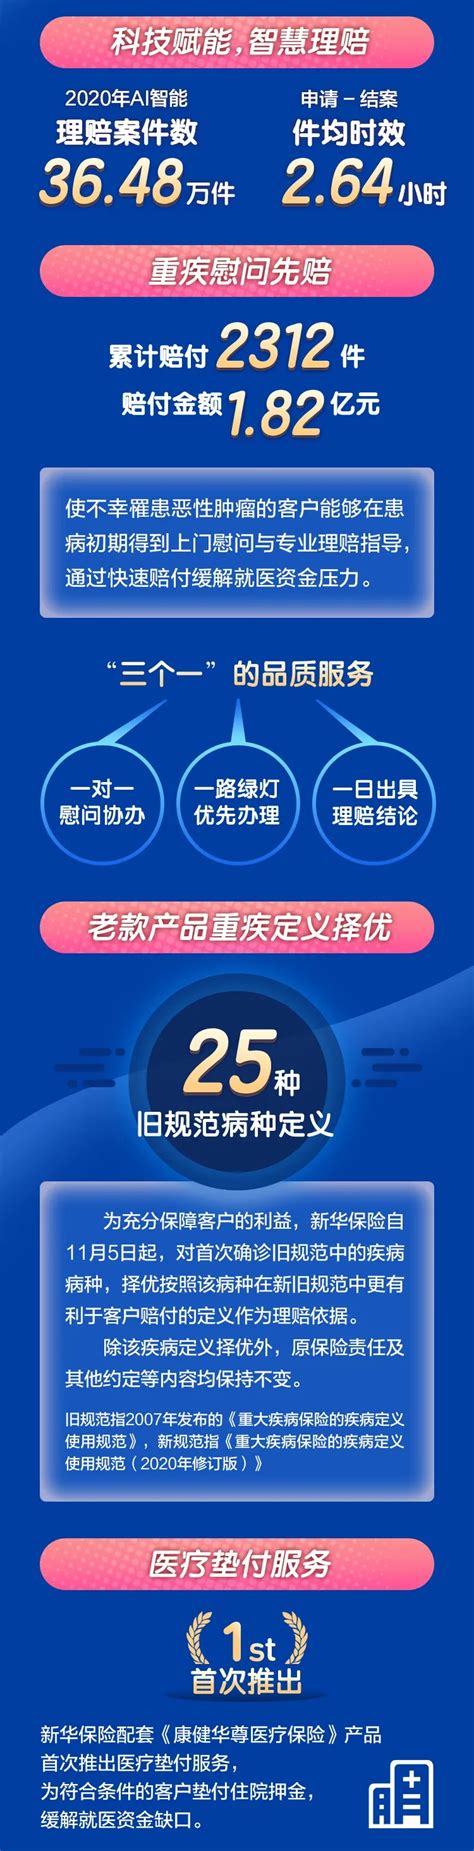 优享资讯 | 新华保险料上半年盈利按年跌最少5成